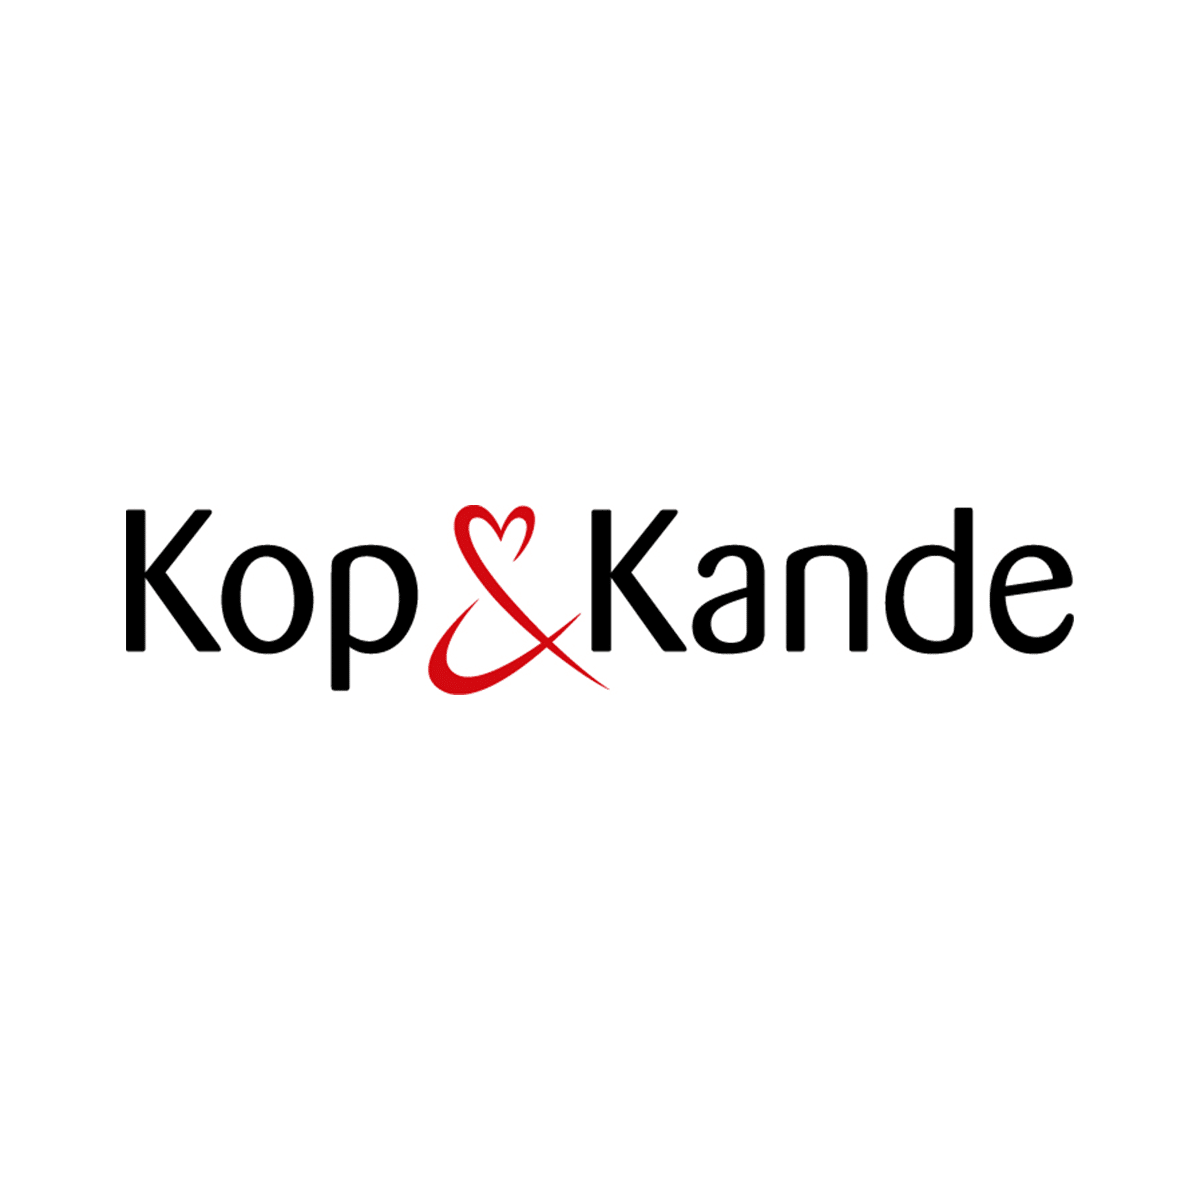 kop&kande-logo